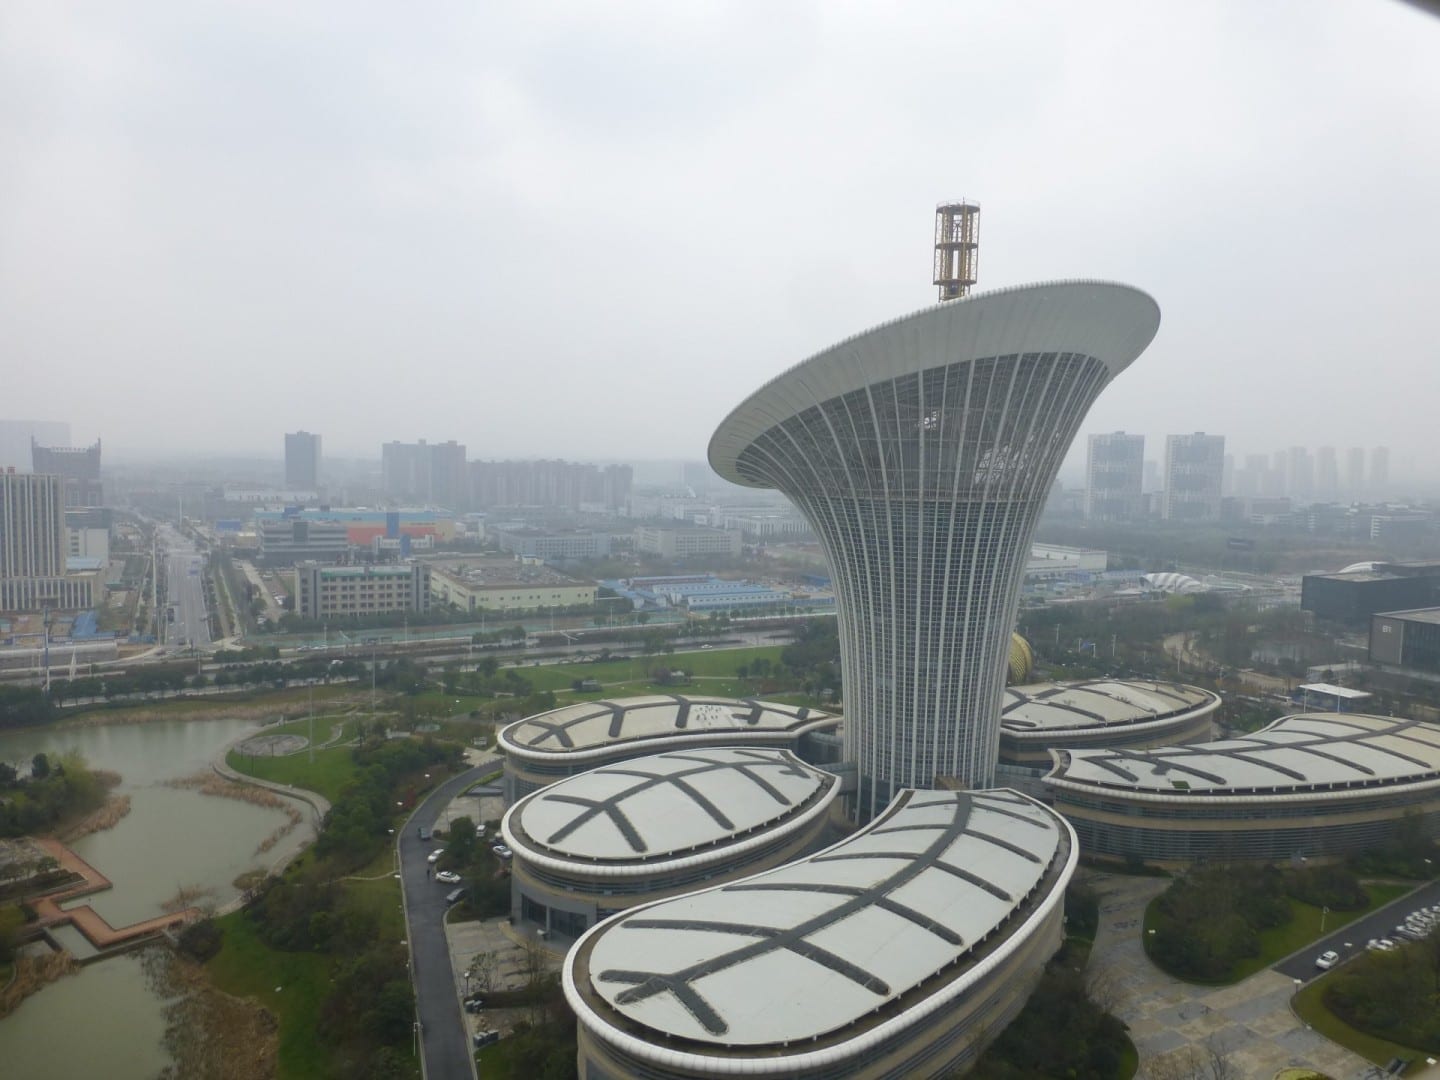 La Ciudad Futura de la Ciencia y la Tecnología, uno de los campus corporativos más orientales del área de desarrollo de Guanggu (Valle de la Óptica) Wuhan China